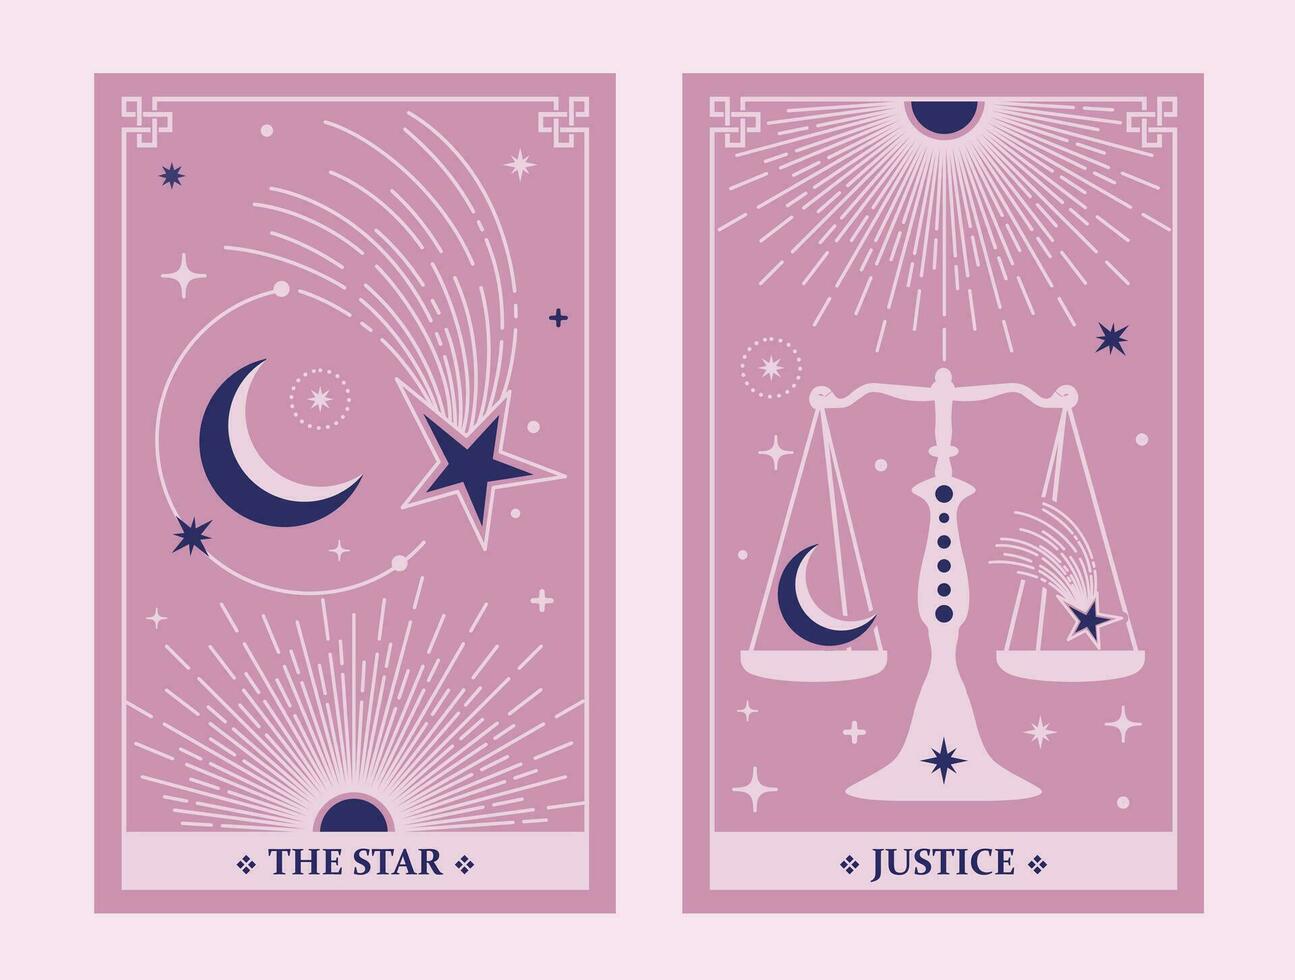 le étoile et Justice tarot carte illustration fortune récit occulte mystique ésotérique. céleste tarot cartes de base sorcière tarots. vecteur illustration.